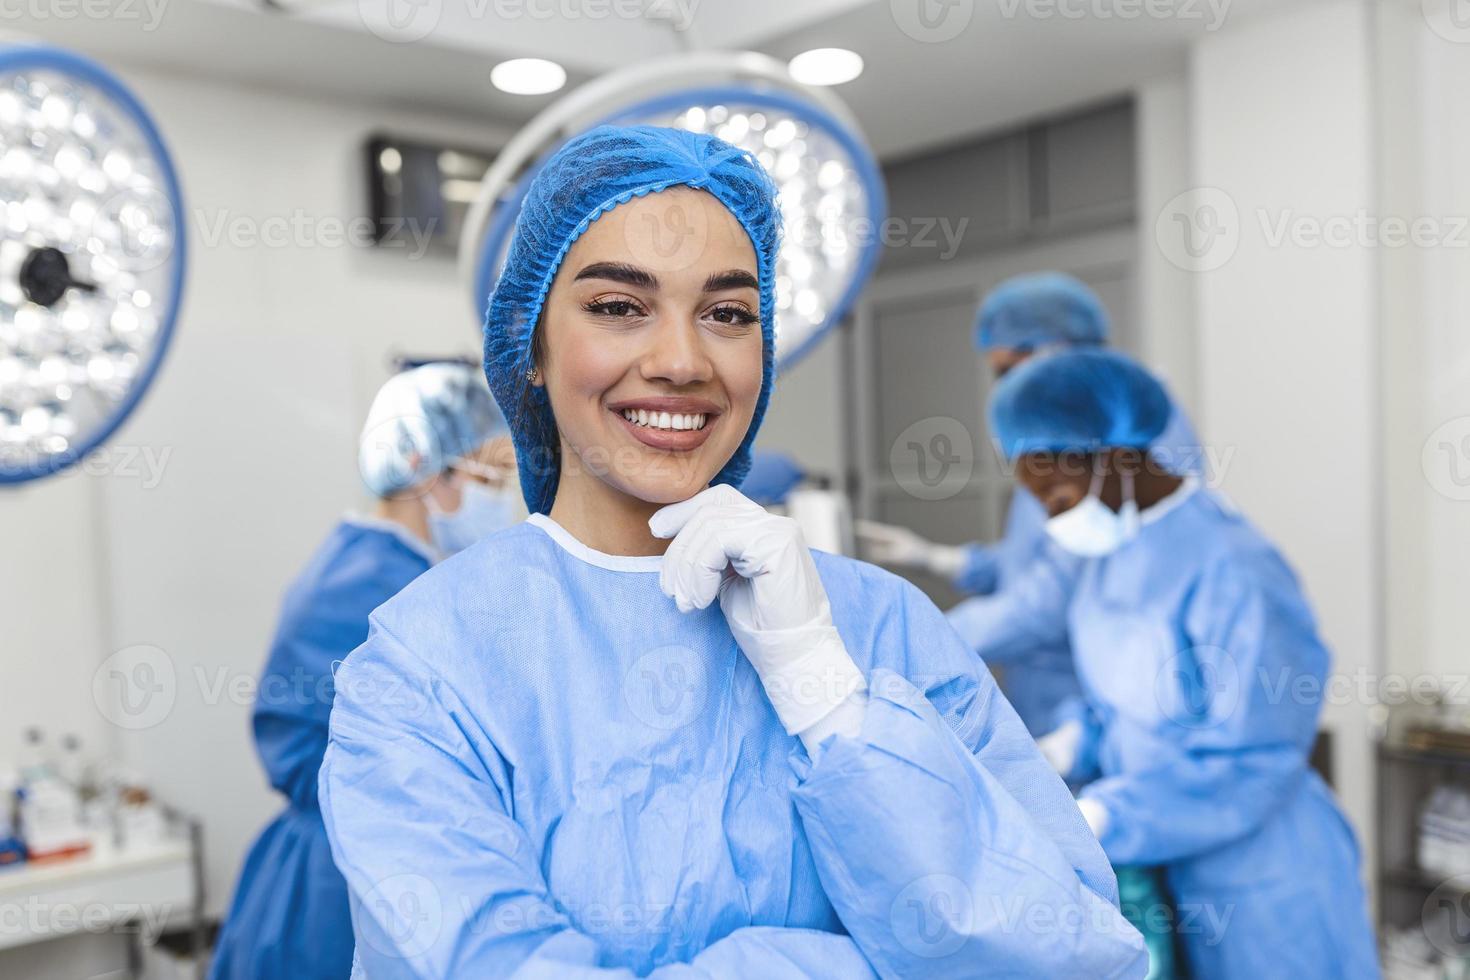 Porträt einer weiblichen Krankenschwester, Chirurgin oder Mitarbeiterin, gekleidet in OP-Kittel, Maske und Haarnetz im Operationssaal des Krankenhauses, die Augenkontakt macht, lächelnd, zufrieden, glücklich, in die Kamera schaut foto